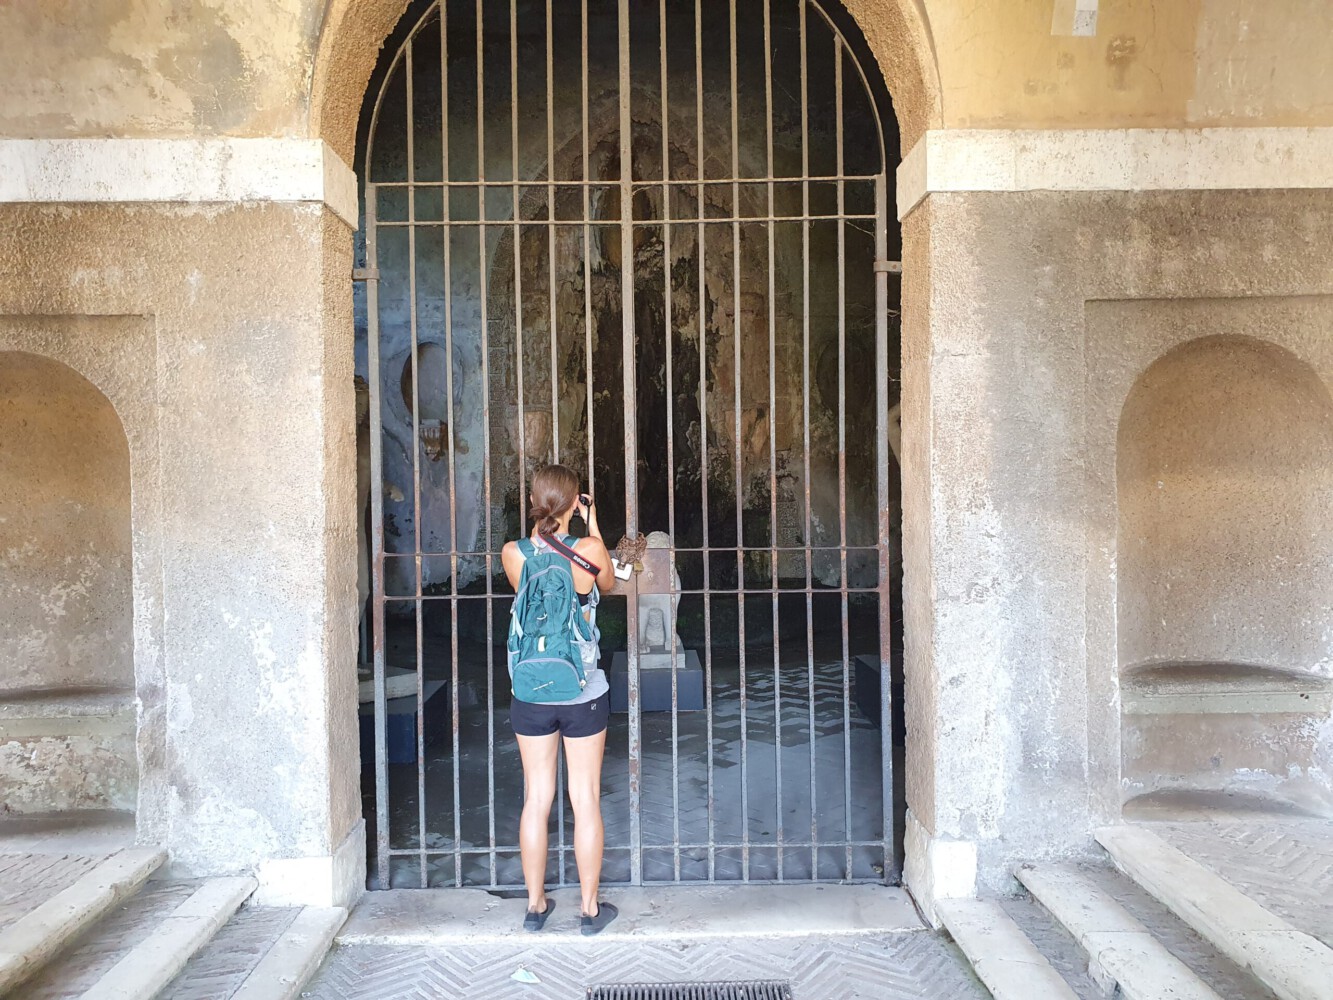 Alina taking photos in the Forum Romanum area.